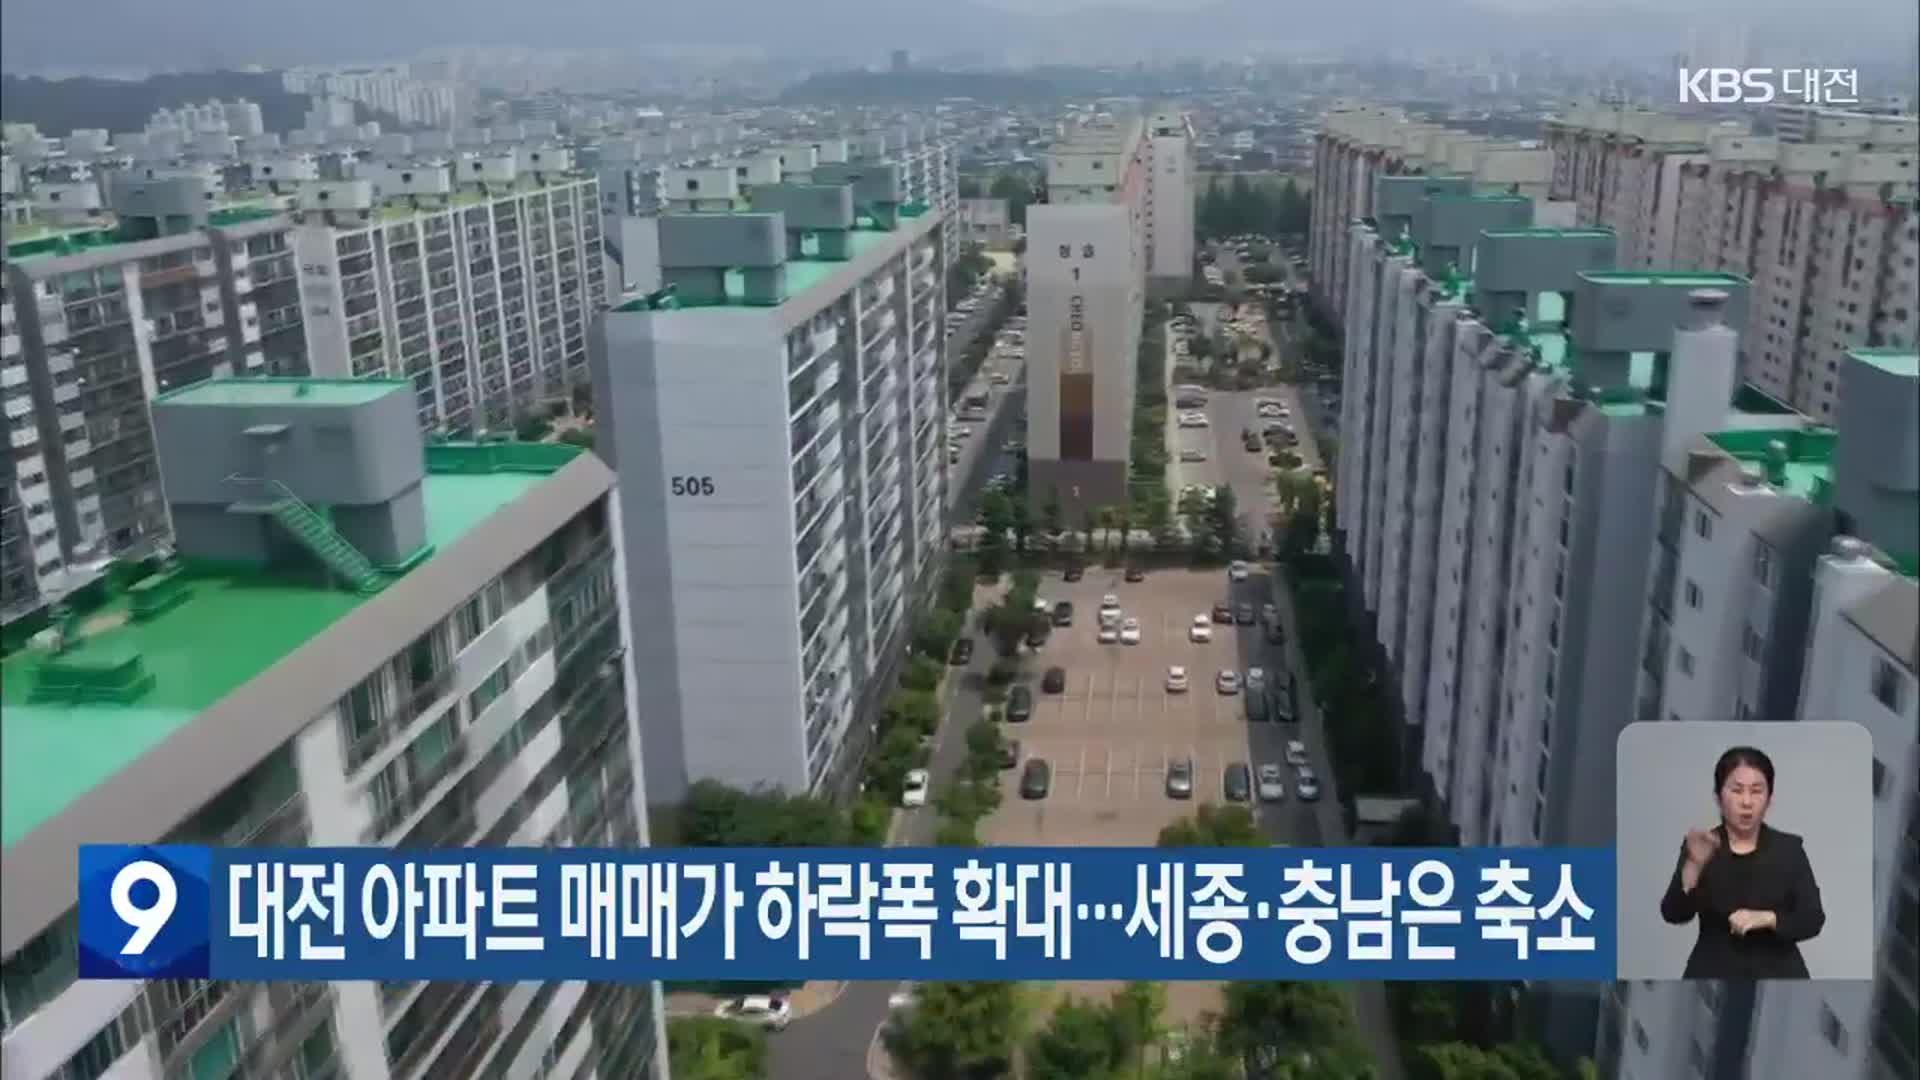 대전 아파트 매매가 하락폭 확대…세종·충남은 축소